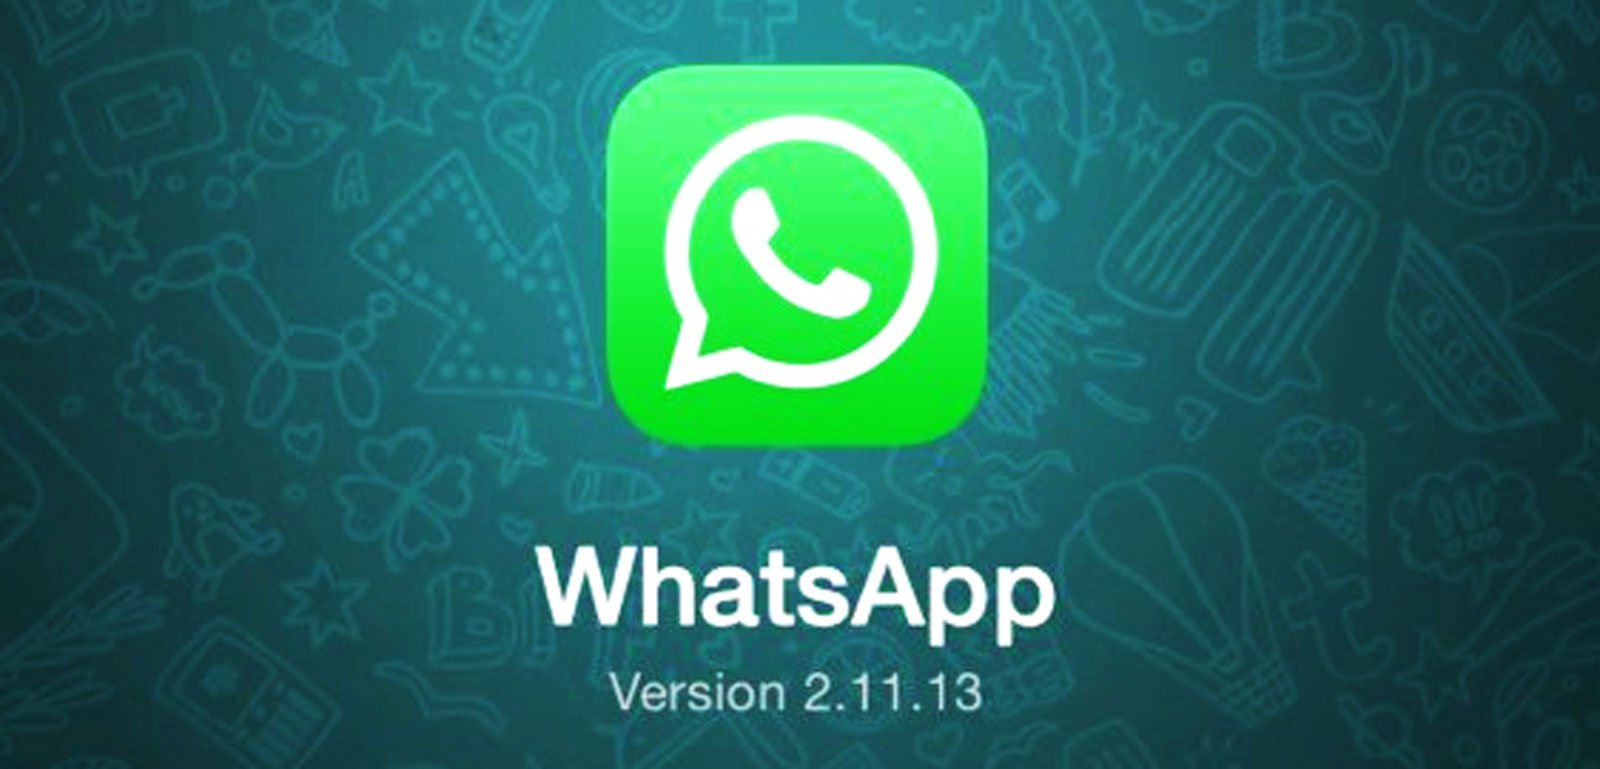 WhatsApp: Wann kommt WhatsApp Update für iPhone 6 und iPhone 6 Plus? 2